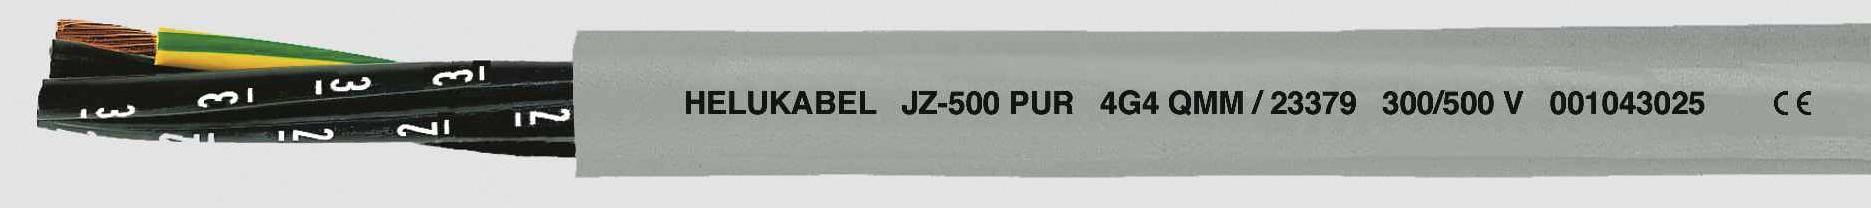 HELUKABEL JZ-500 PUR Steuerleitung 5 G 1 mm² Grau 23349-1000 1000 m